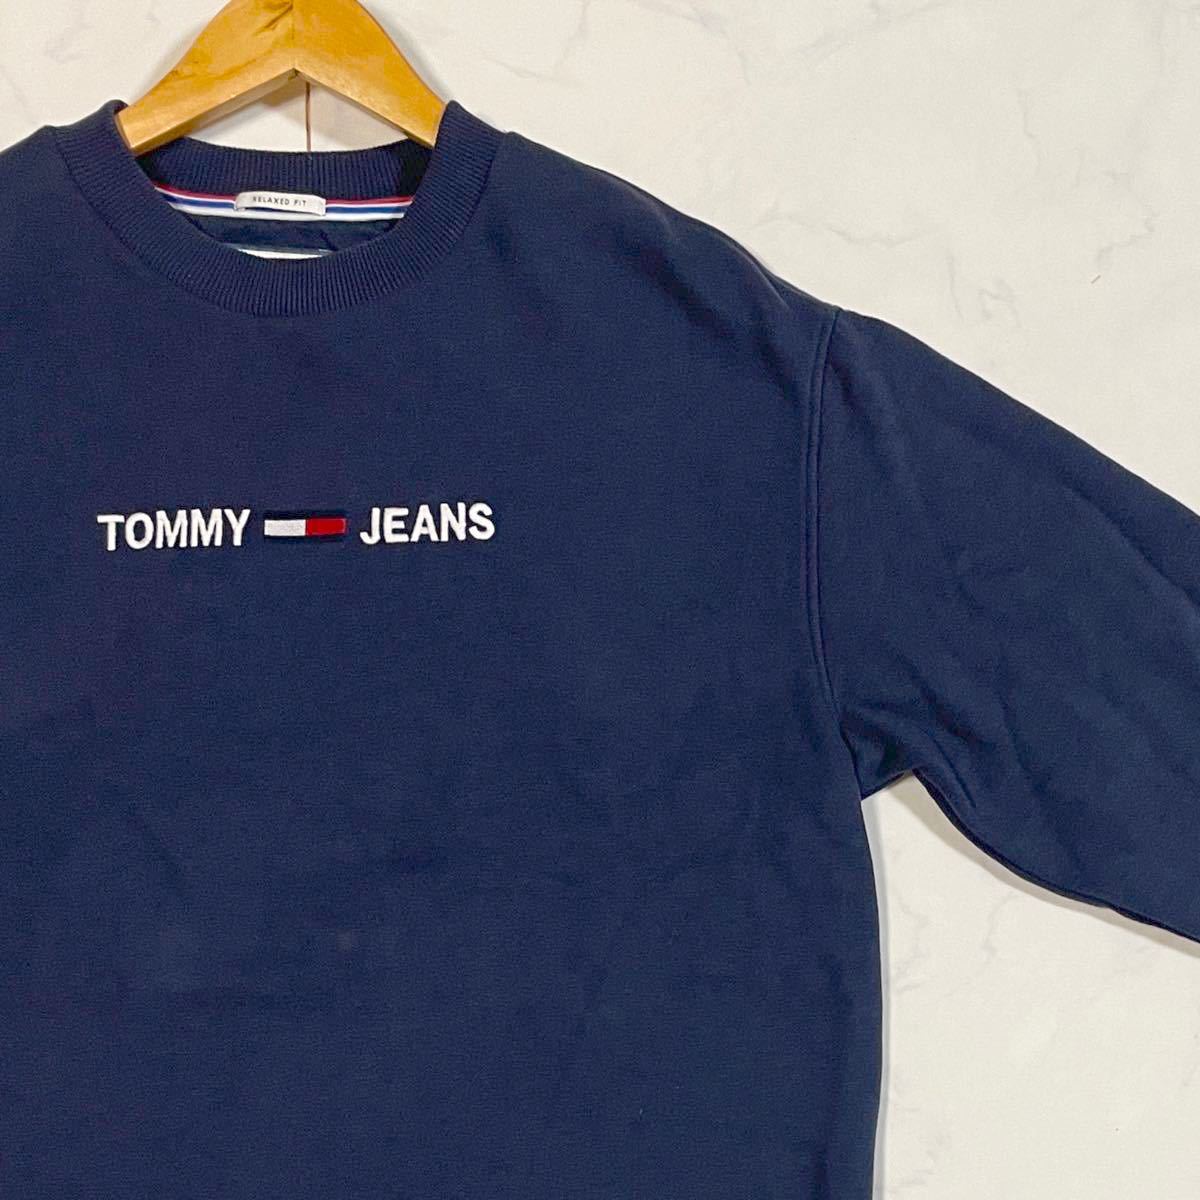 Tommy jeans トミージーンズ 古着 ビンテージ スウェット トレーナー ネイビー